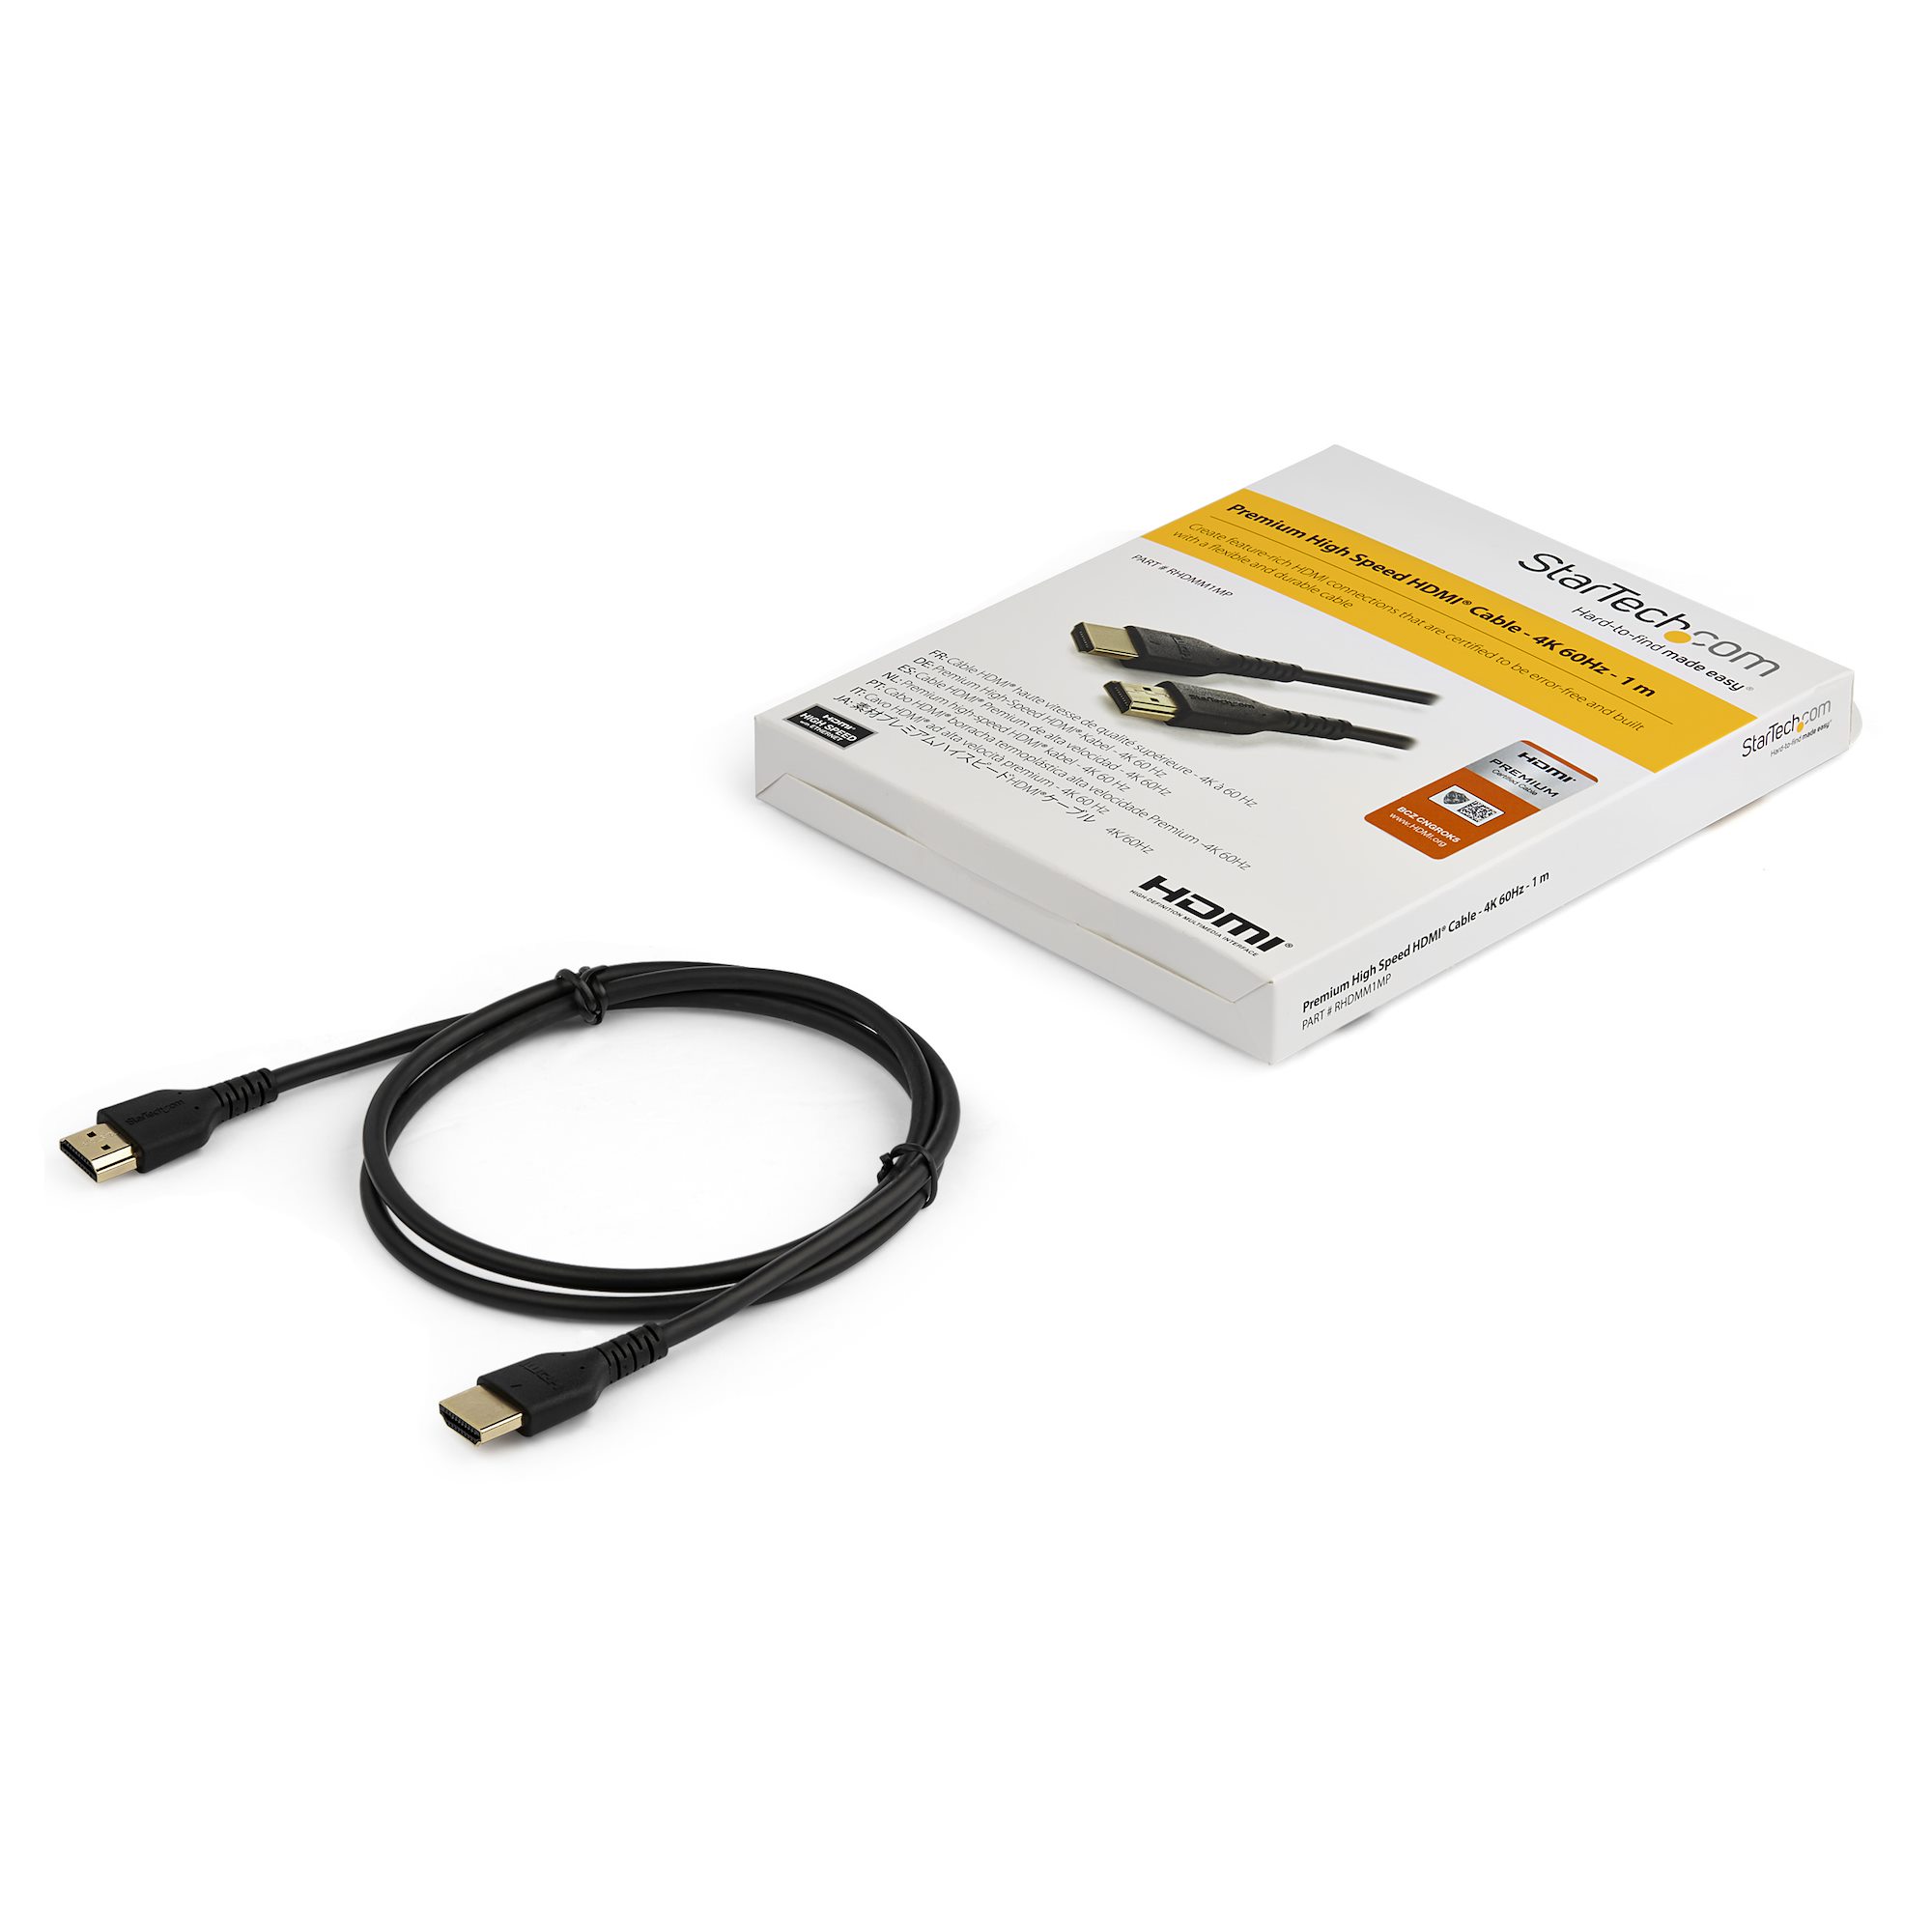 StarTech.com Câble Premium HDMI 2.0 Certifié avec Ethernet 7m